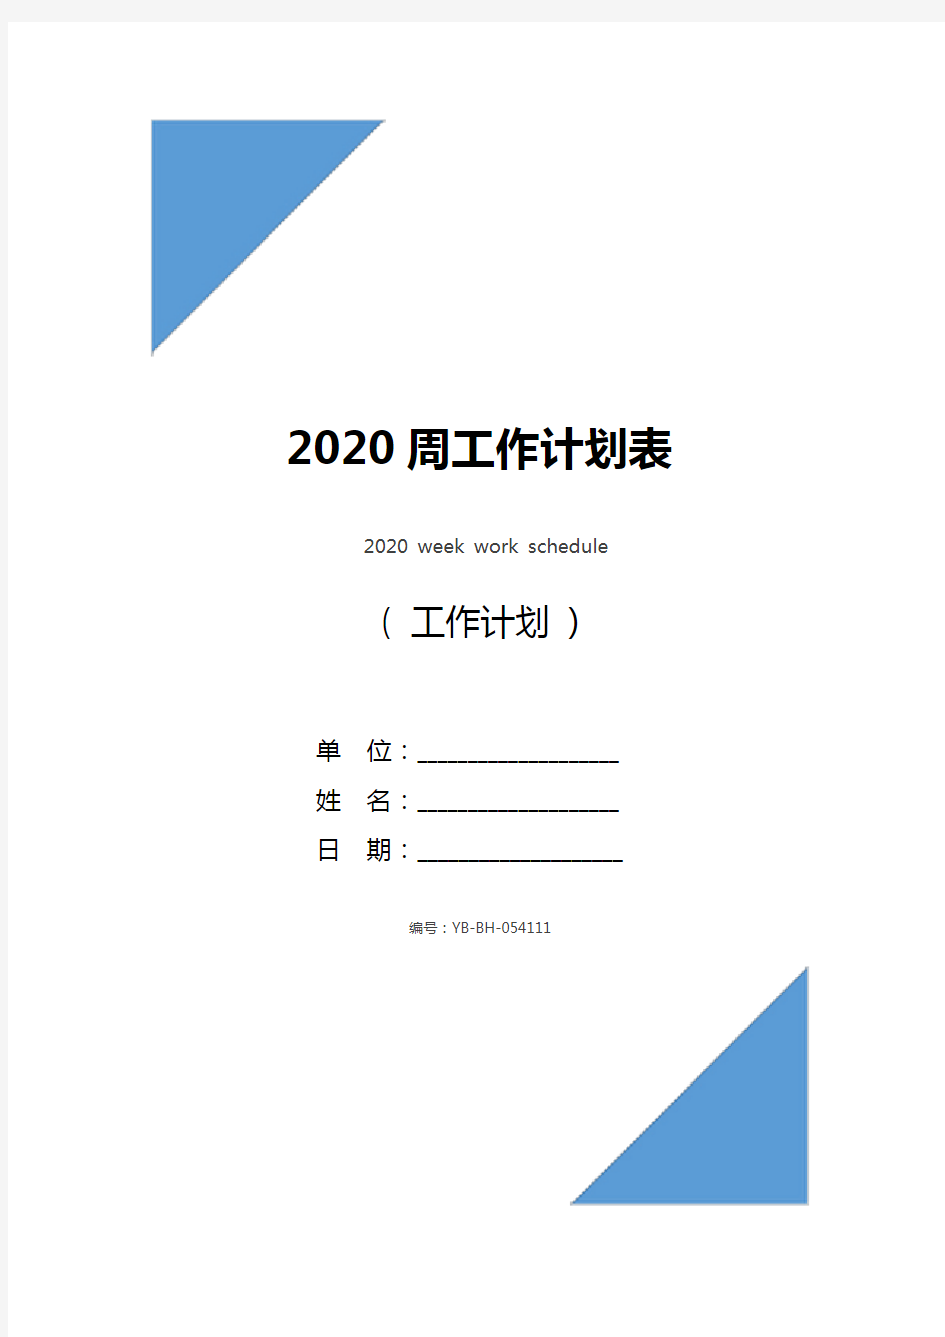 2020周工作计划表